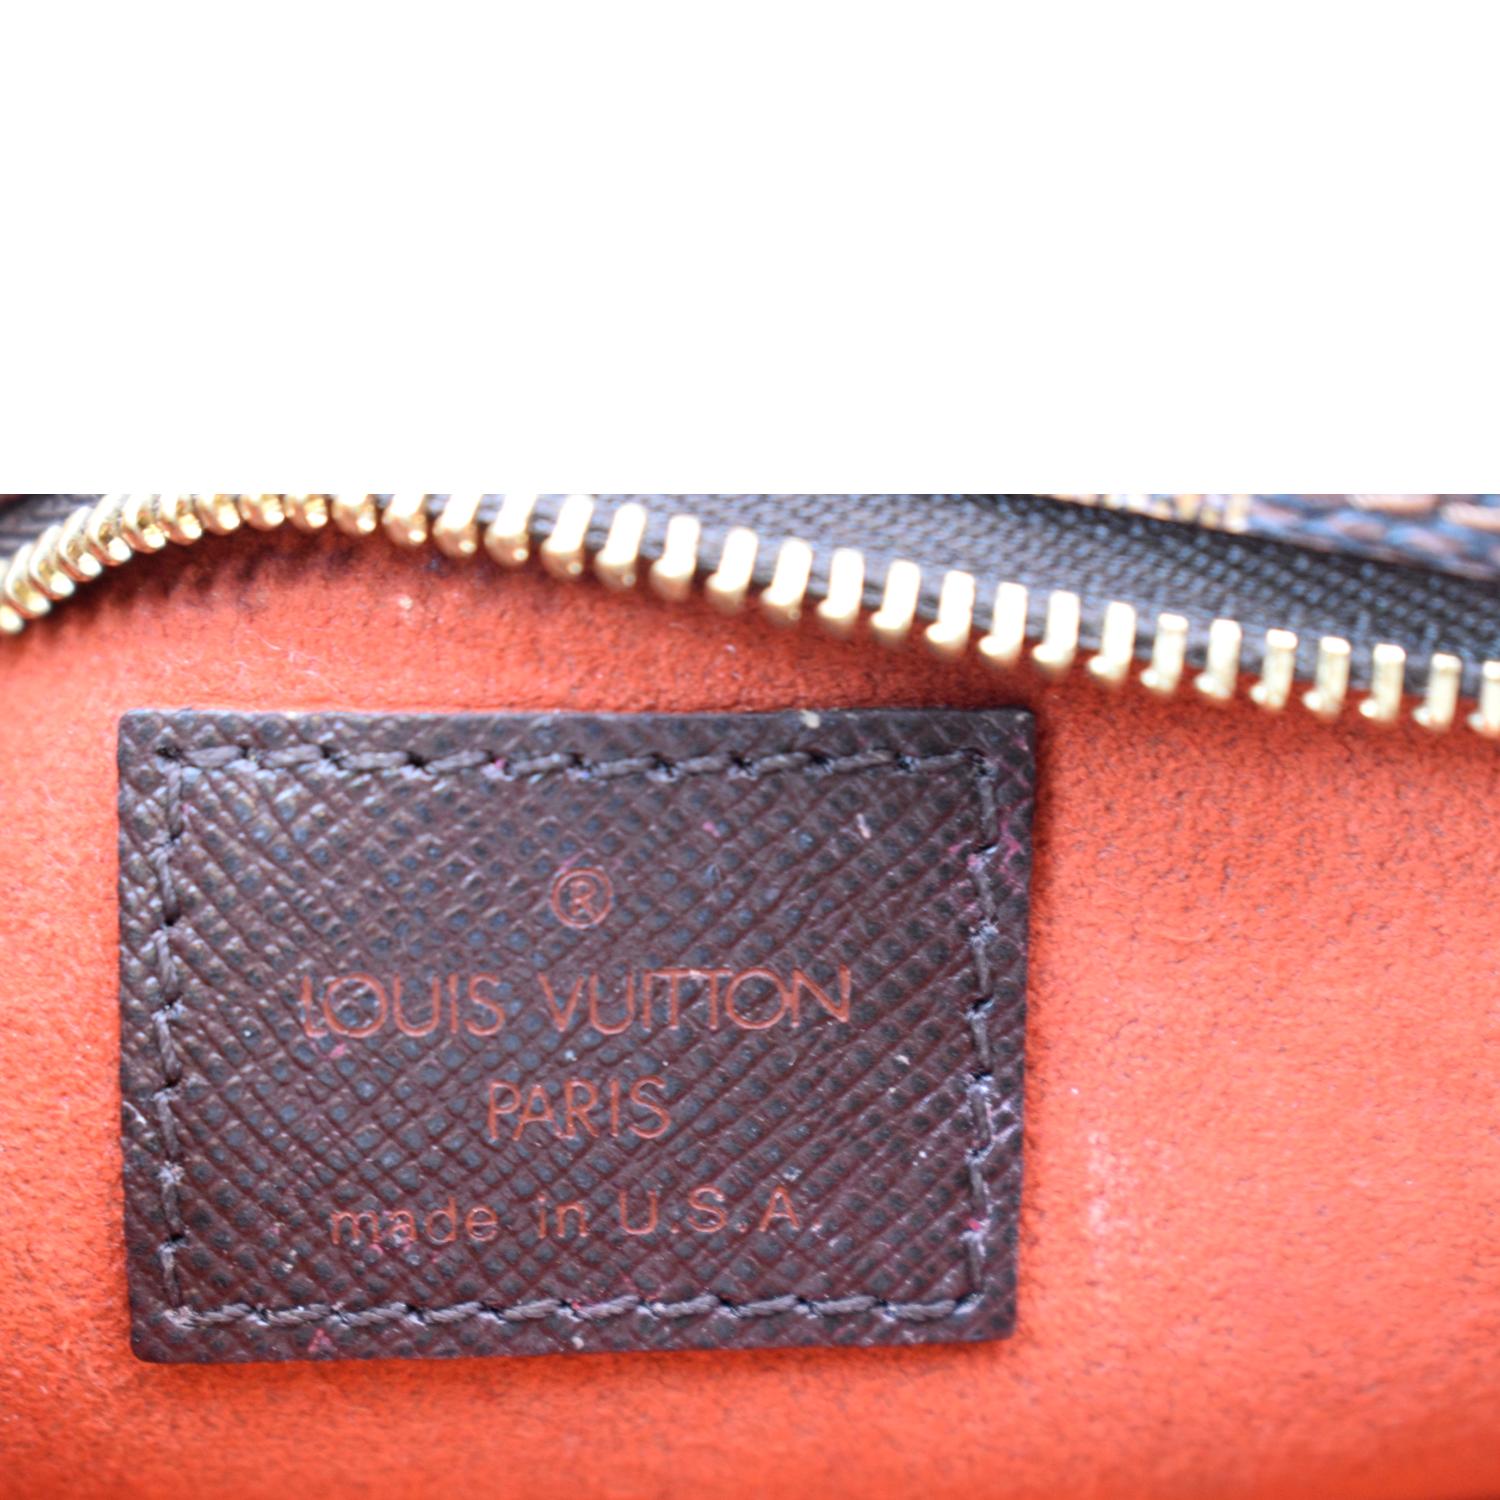 Louis Vuitton Toilet - For Sale on 1stDibs  toilet lv, lv toilet, louis  vuitton paris new delhi bag